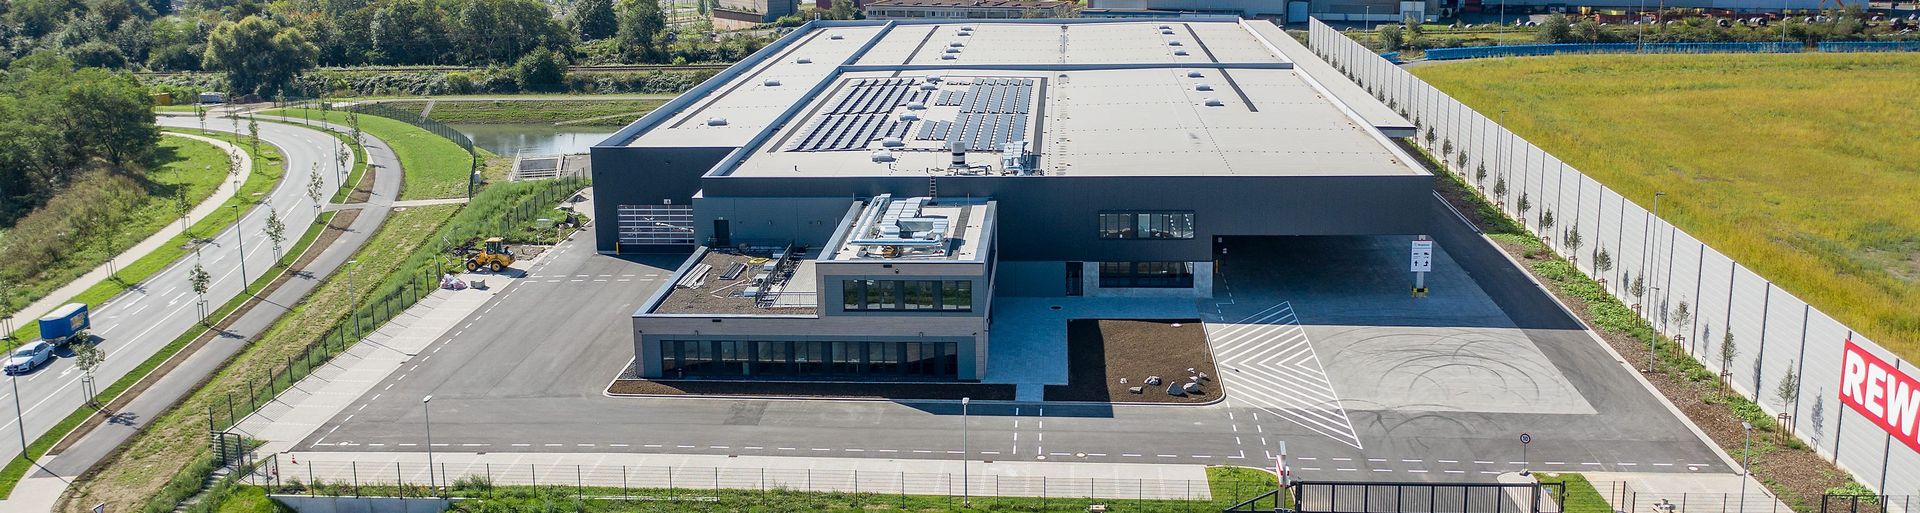 Fachhändler für die Bedachungsbranche DEG Dach-Fassade-Holz eG, Standort Dortmund, Nordrhein-Westfalen - Luftaufnahme